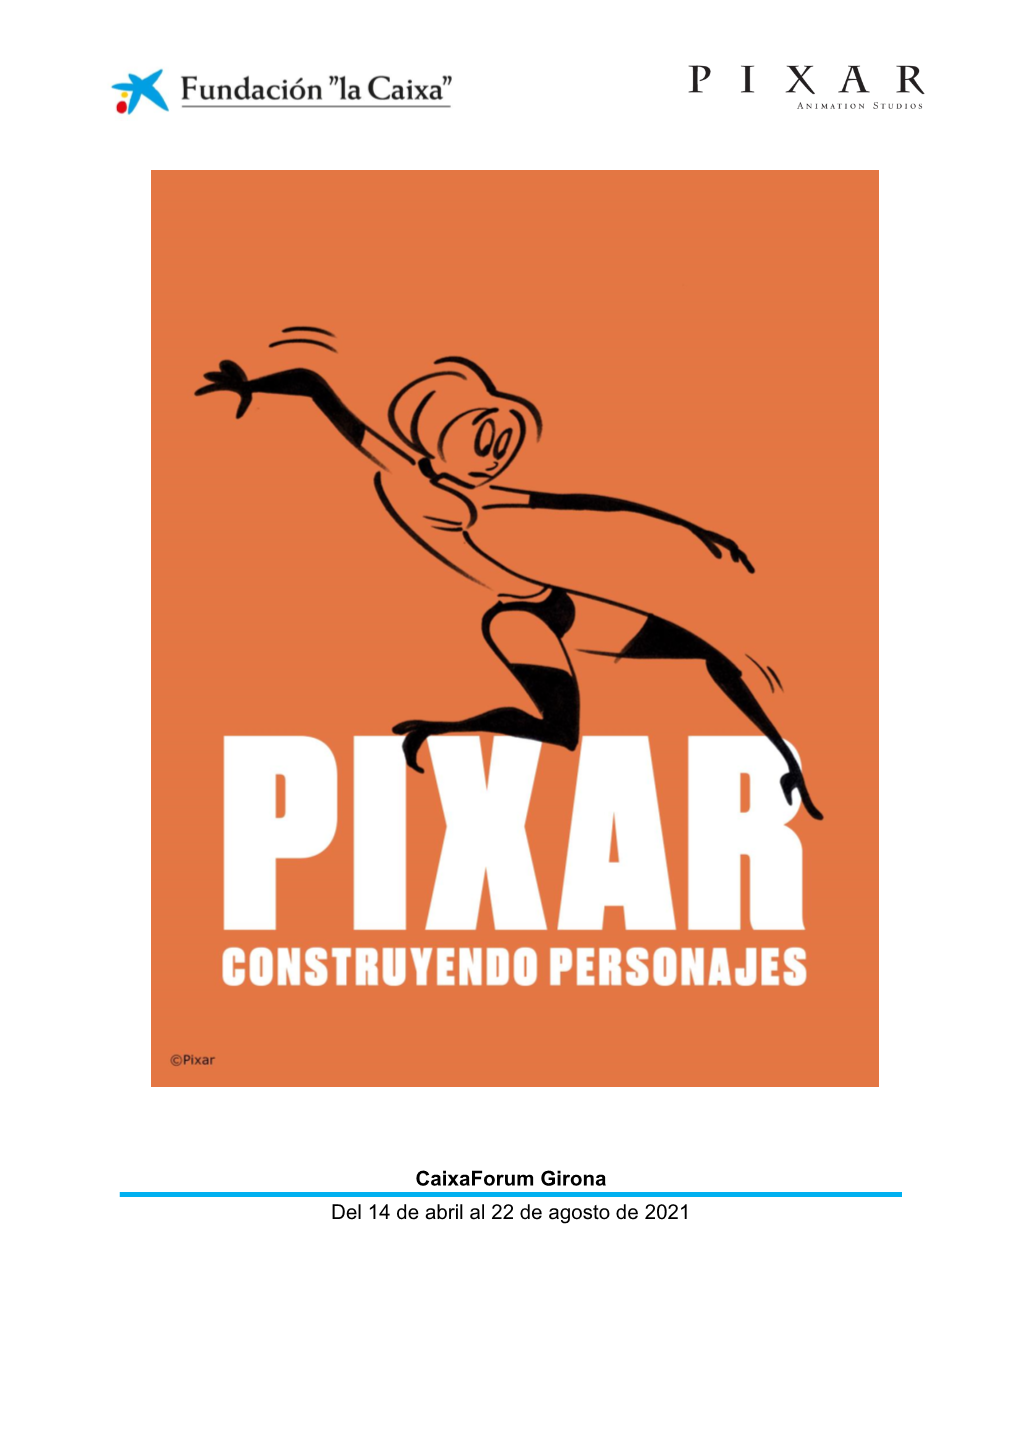 Exposición "Pixar" En Caixaforum Girona